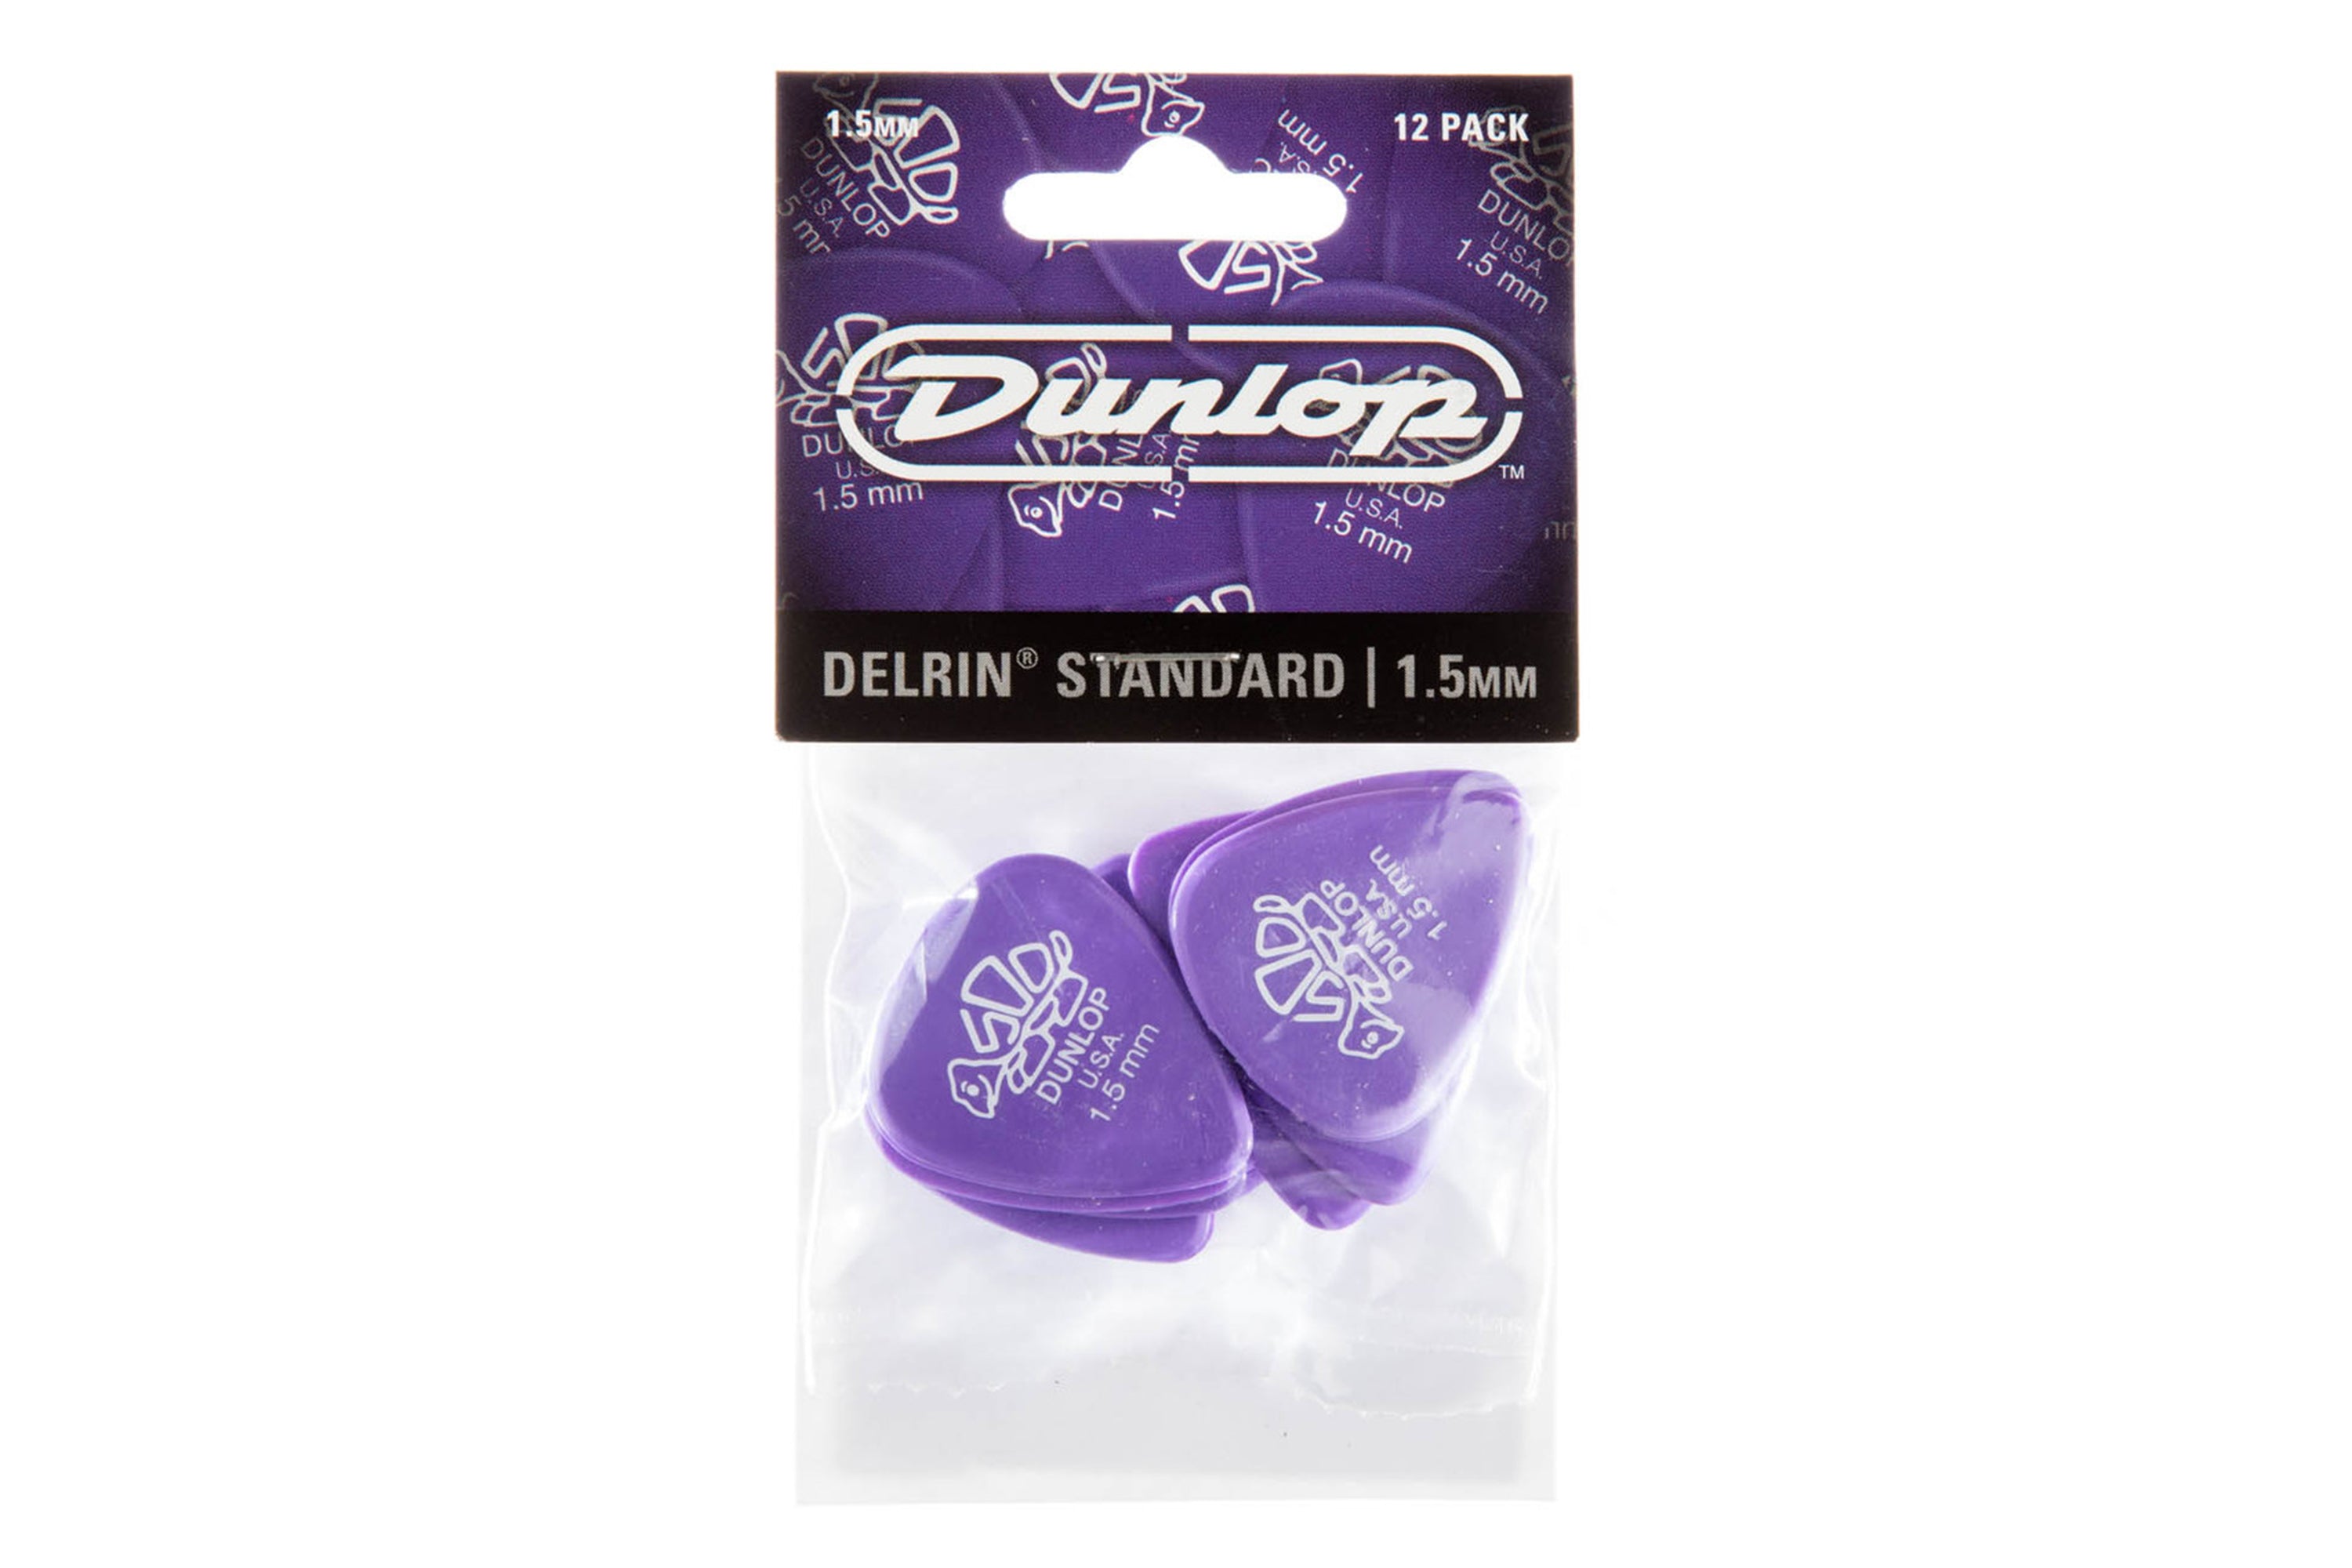 Dunlop Delrin 500 Standard 1.5mm Lavender Guitar & Ukulele Picks 12 Pack